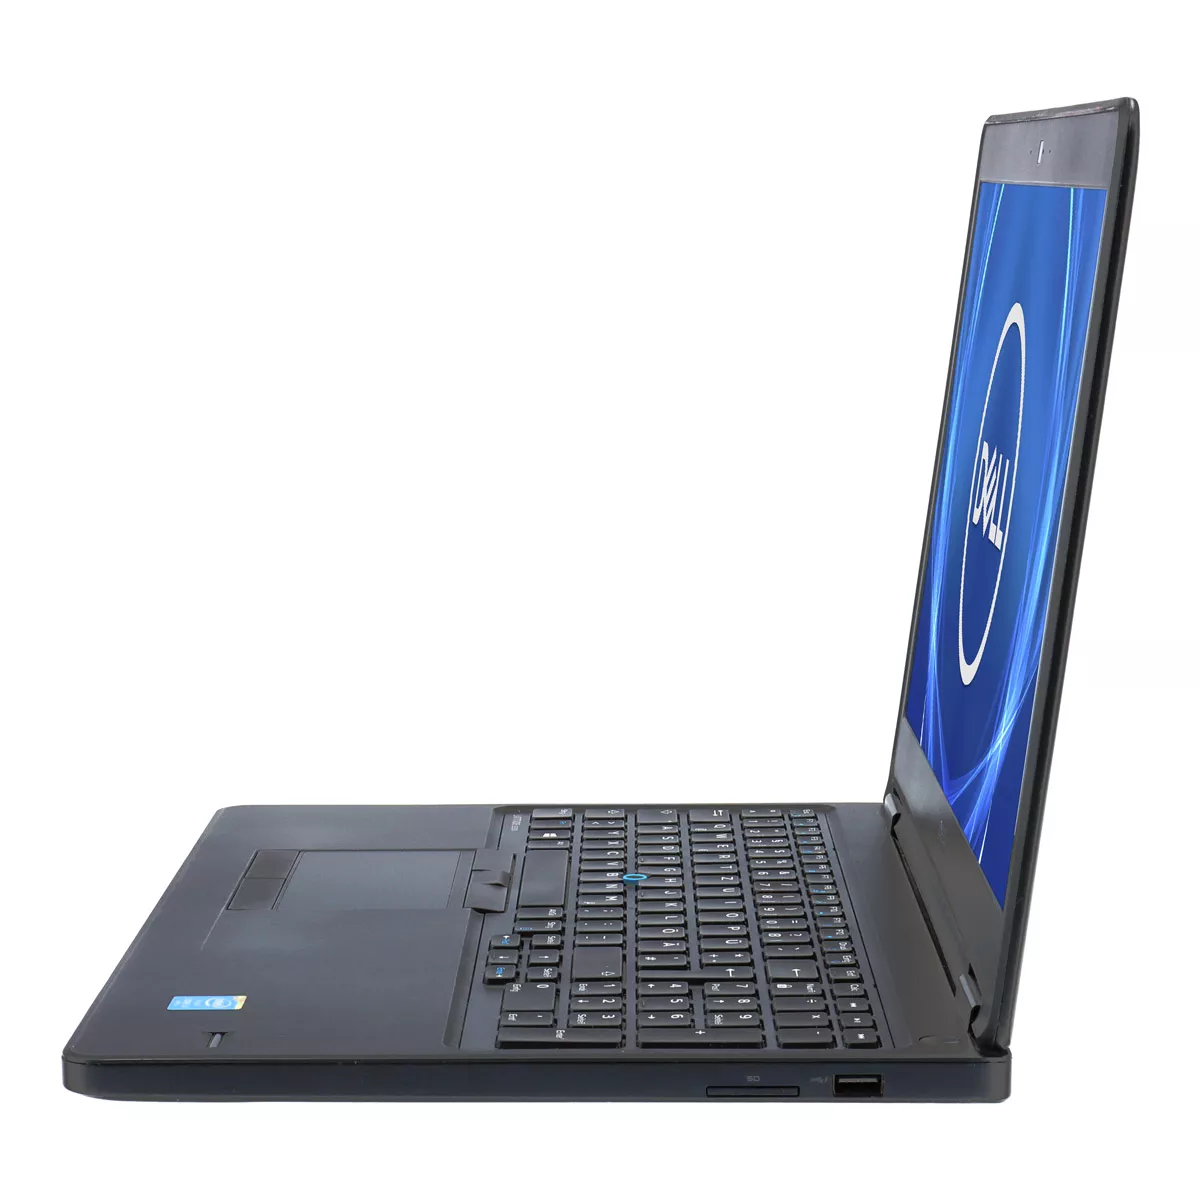 Dell Latitude E5550 Core i5 5300U Full-HD 240 GB SSD Webcam A+